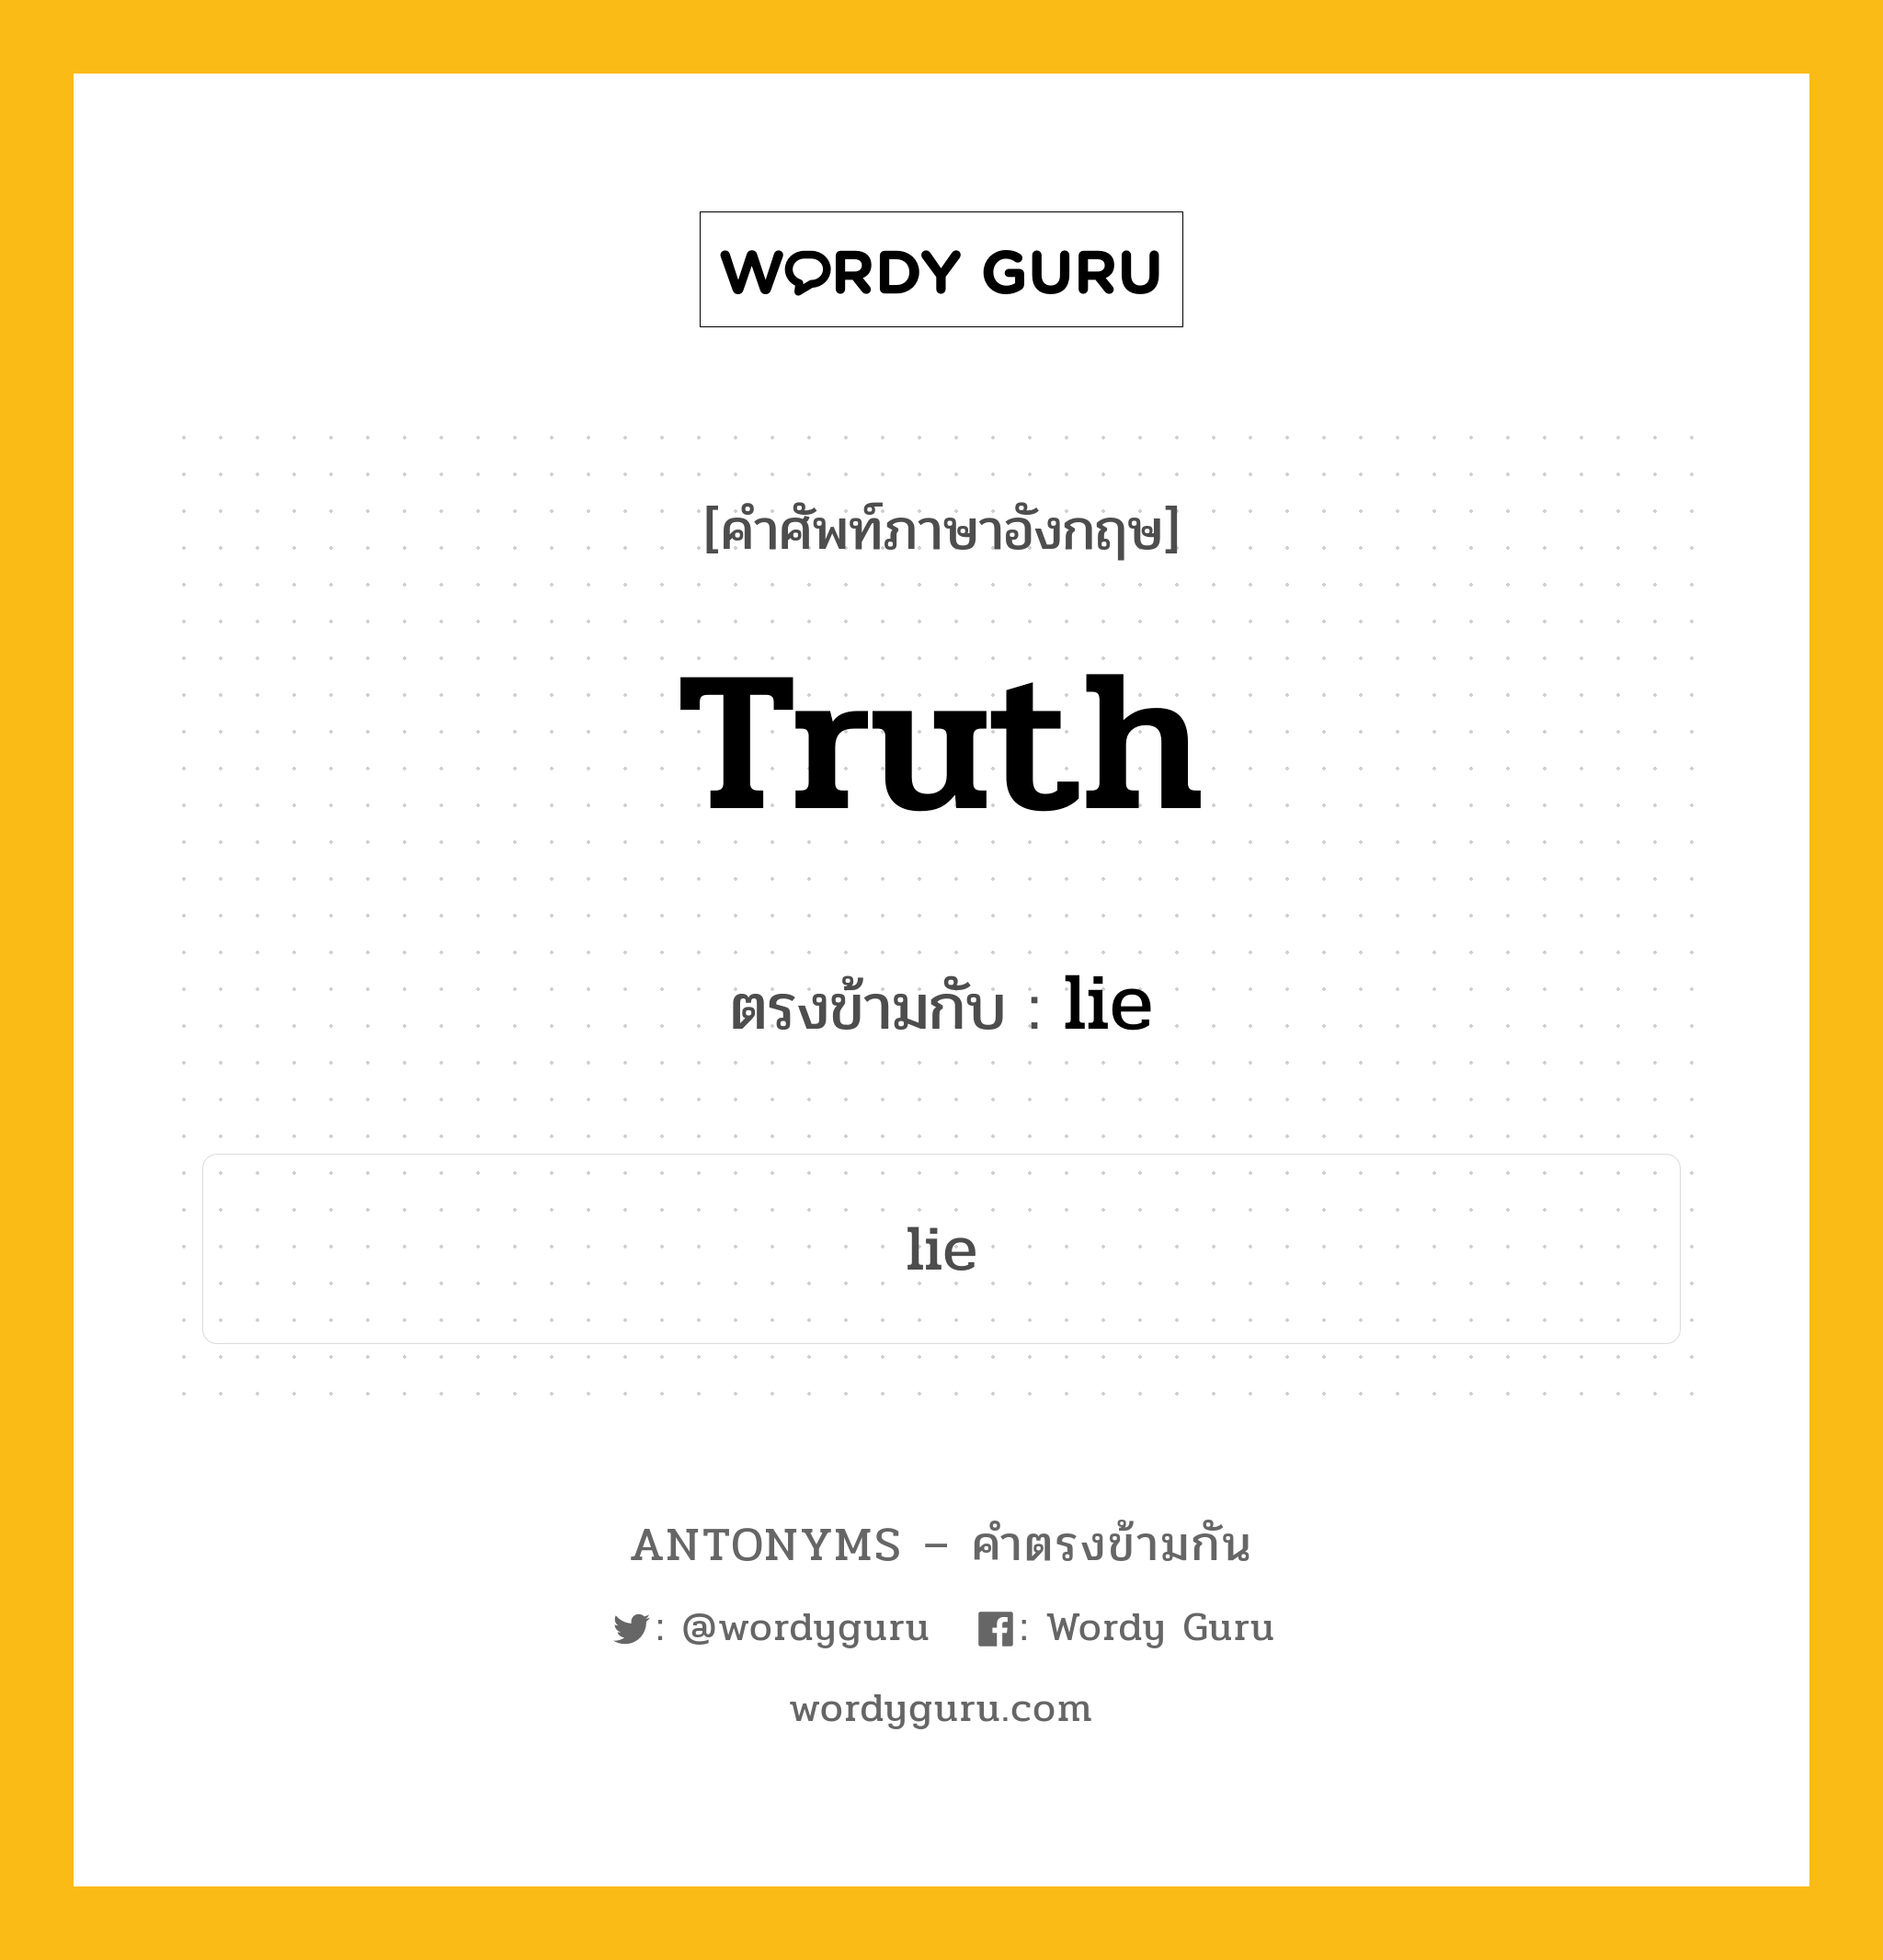 truth เป็นคำตรงข้ามกับคำไหนบ้าง?, คำศัพท์ภาษาอังกฤษ truth ตรงข้ามกับ lie หมวด lie